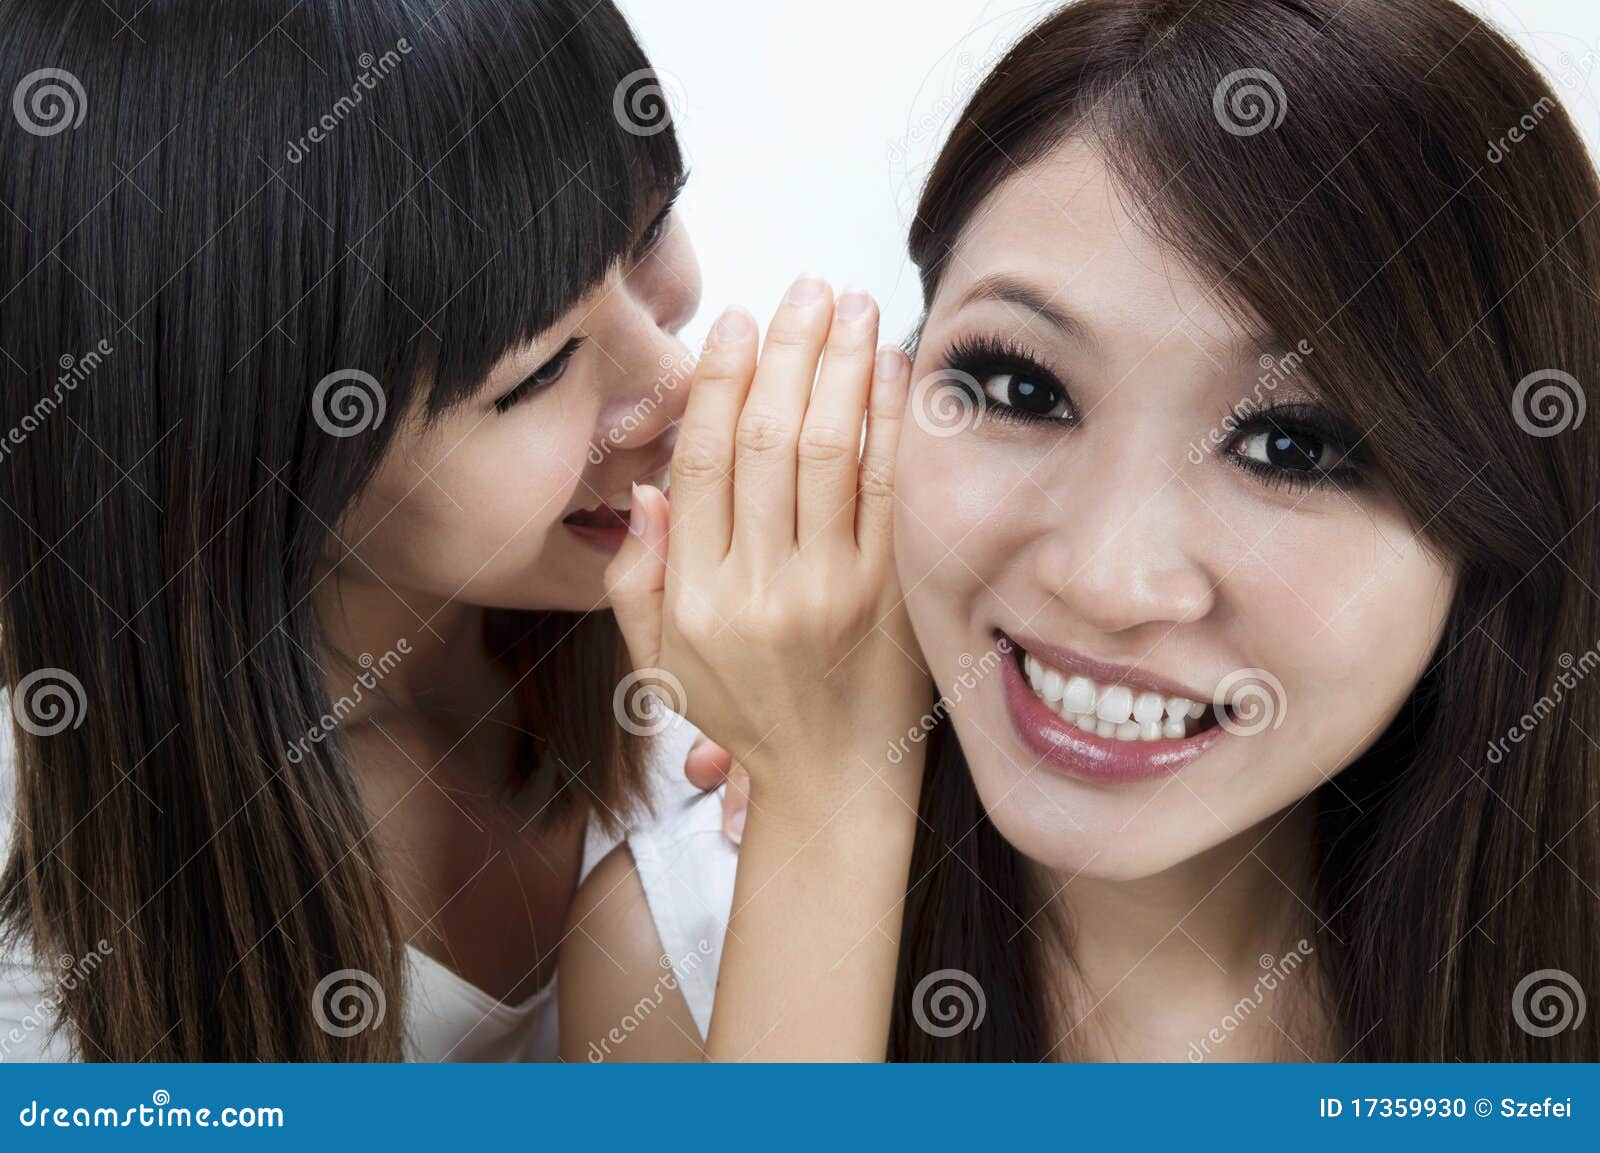 asian girls tongue kissing